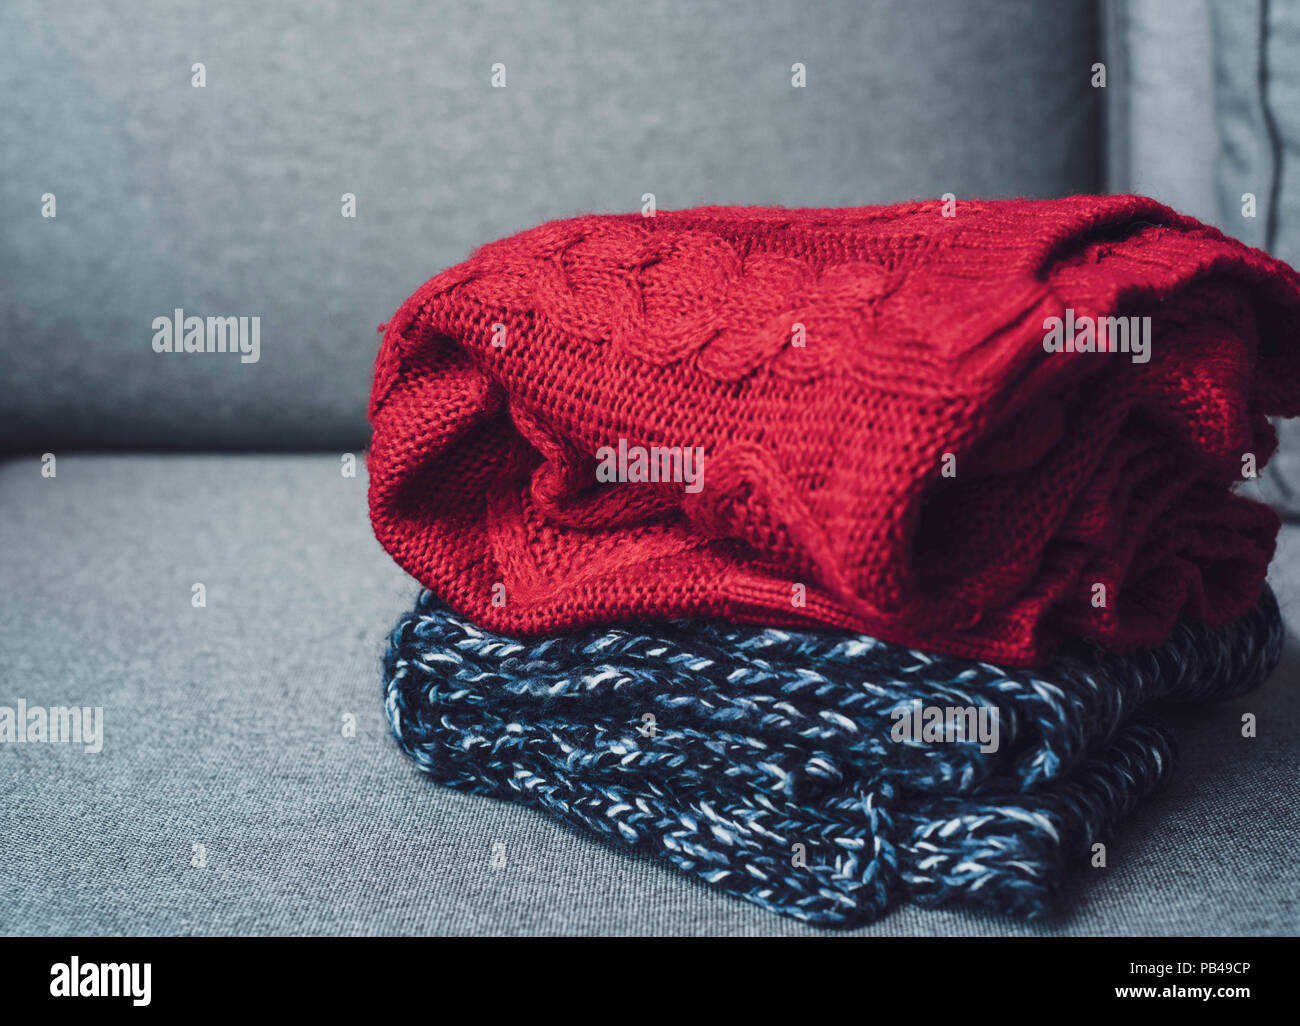 https://c8.alamy.com/compes/pb49cp/horizontal-sueteres-en-gris-camilla-concepto-estacionales-el-otono-otono-invierno-outfit-clima-frio-pb49cp.jpg